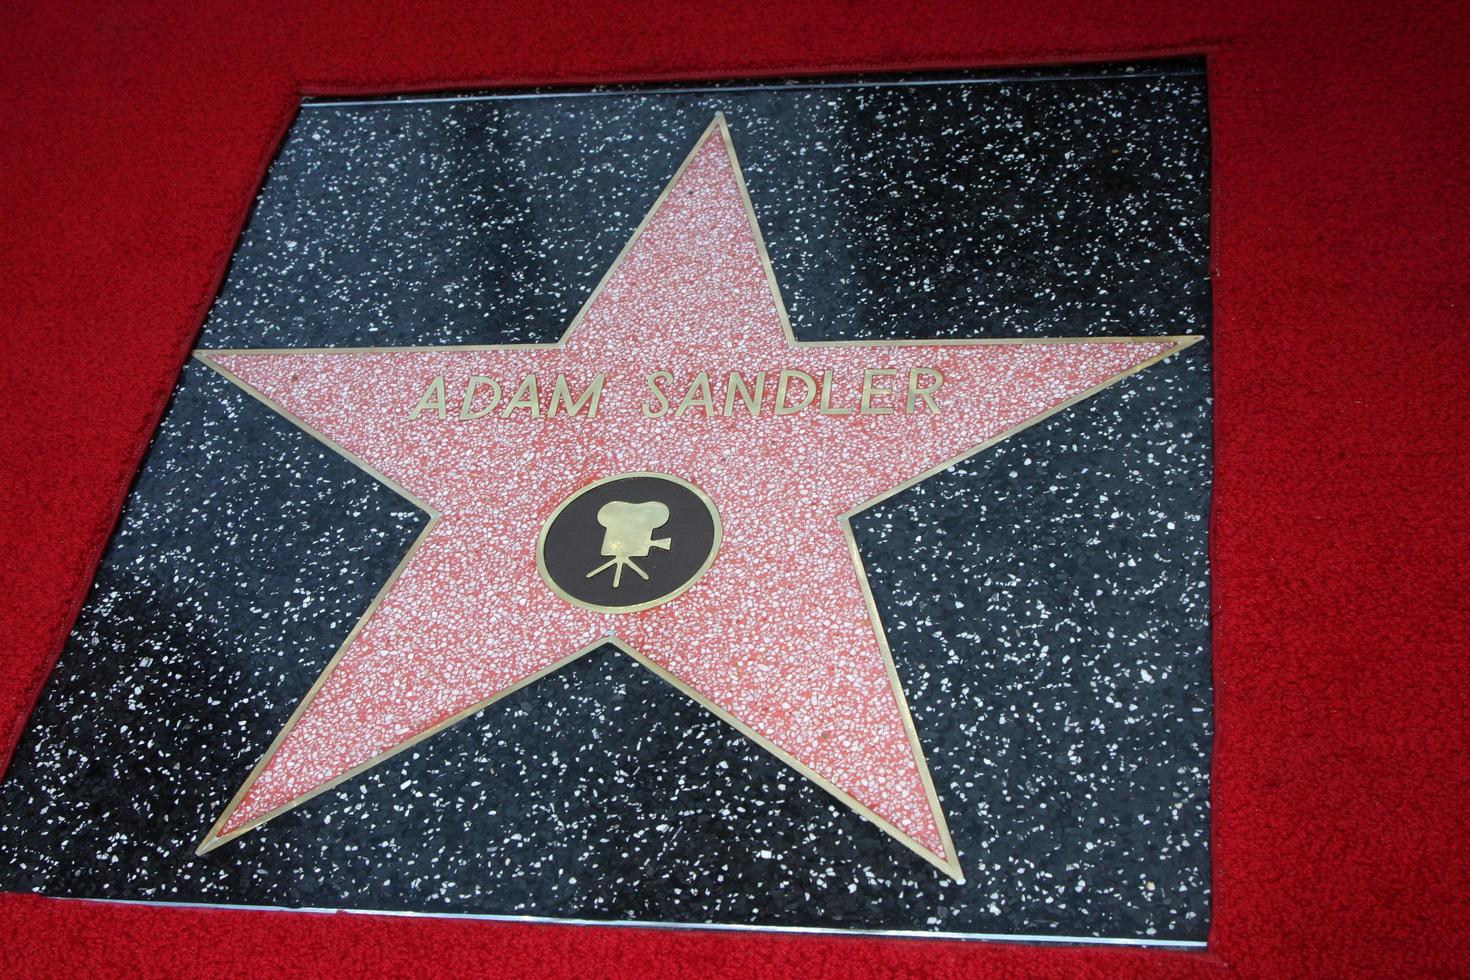 los angeles - feb 1 - Adam sandler stjärna på de Adam sandler hollywood promenad av berömmelse stjärna ceremoni på w hotell på februari 1, 2011 i hollywood, ca foto